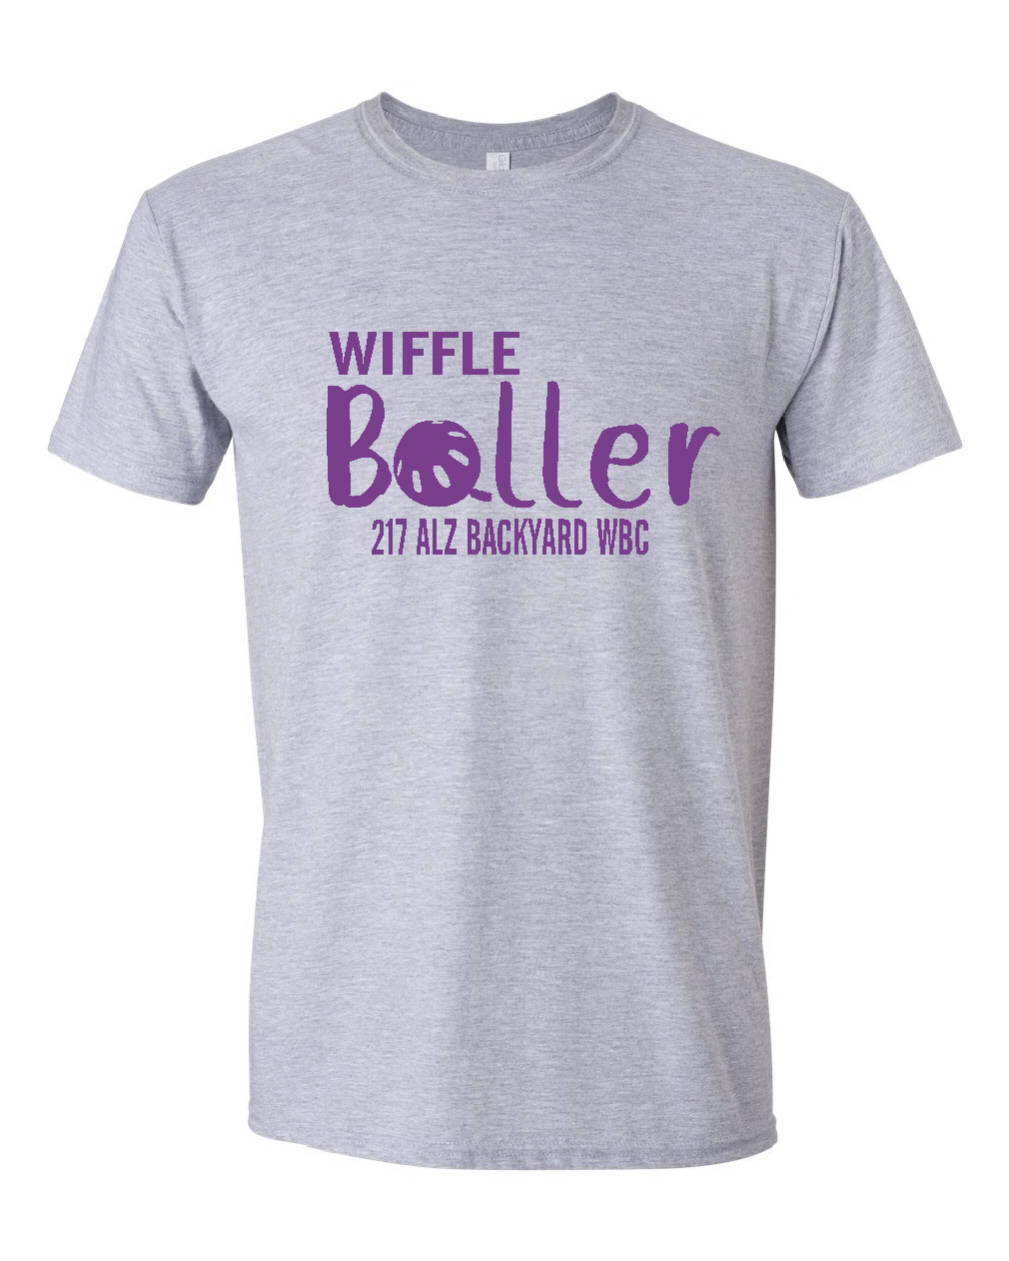 Wiffle Baller